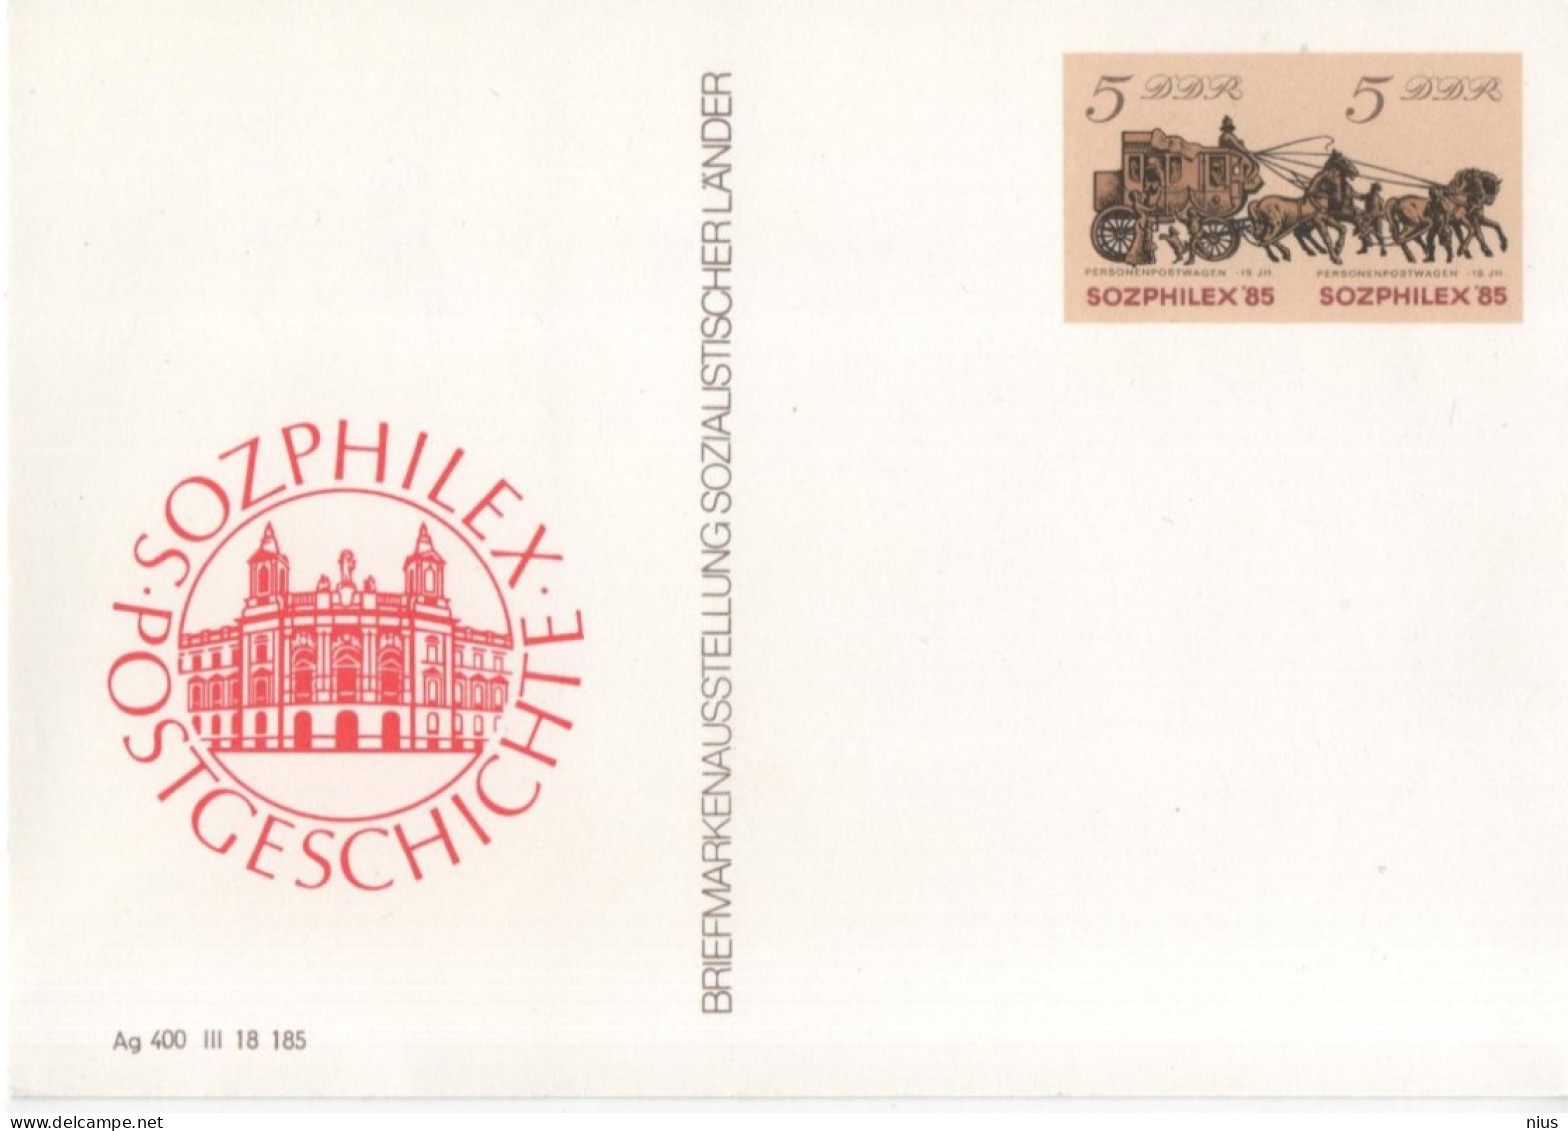 Germany DDR 1985 Briefmarkenausstellung Sozialistischer Lander Stamp Exhibition Of Socialist Countries, SOZPHILEX'85 - Postkarten - Ungebraucht